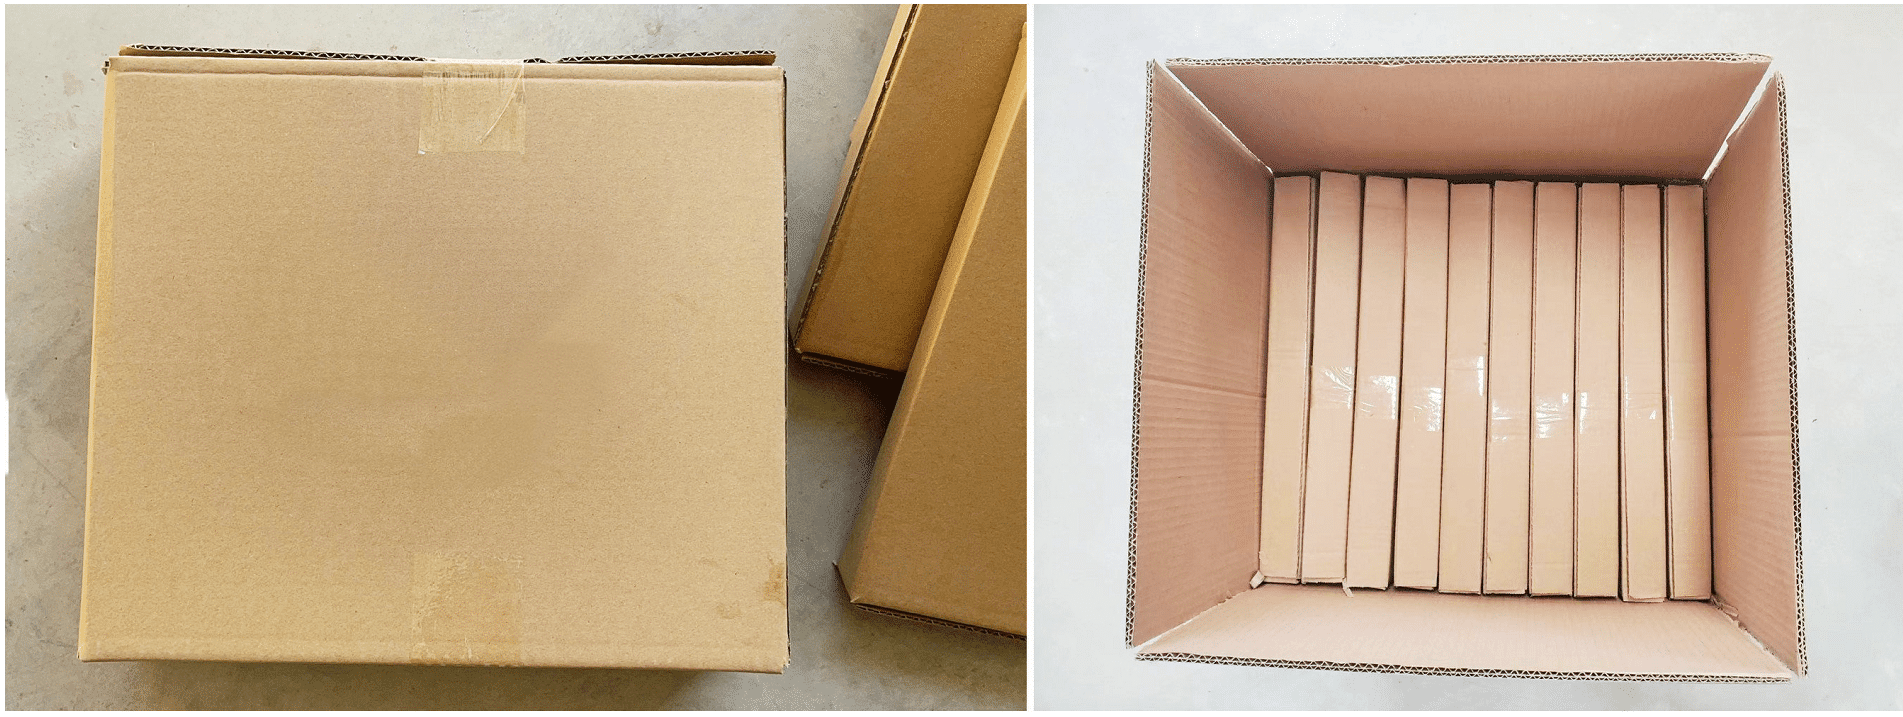 Packaging (1)